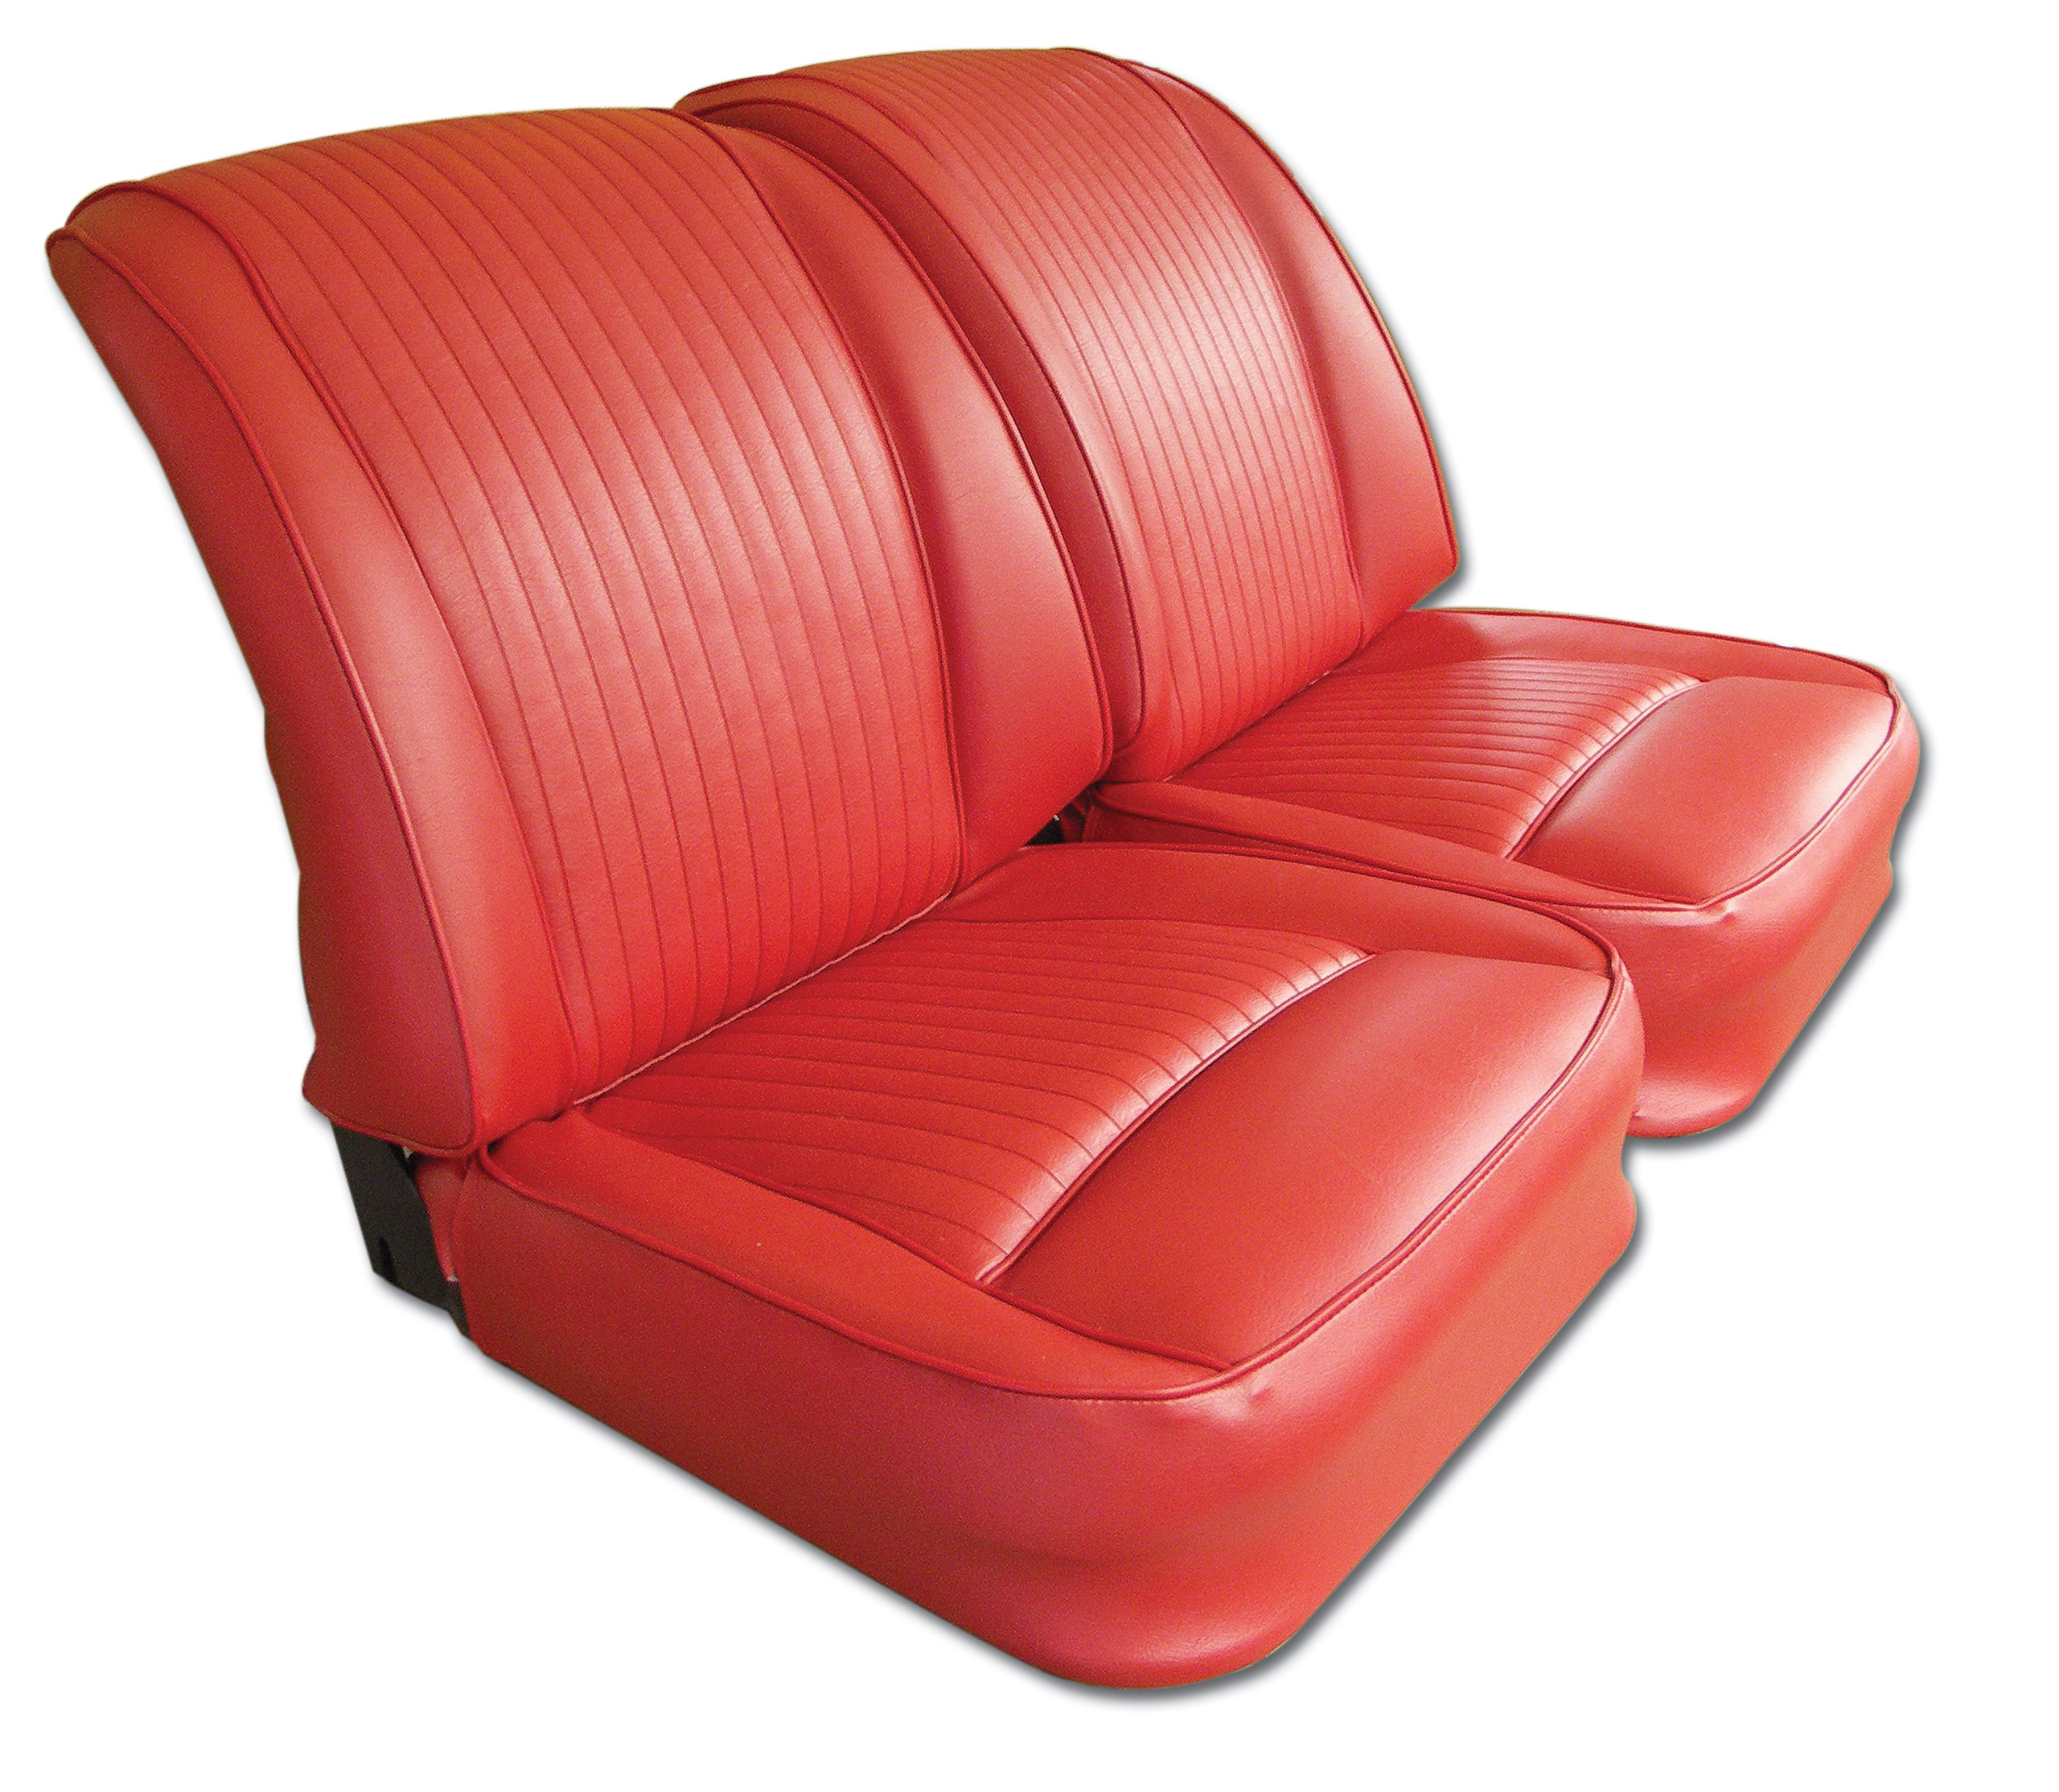 1962 Corvette C1 Vinyl Seat Covers- Red CA-417035 